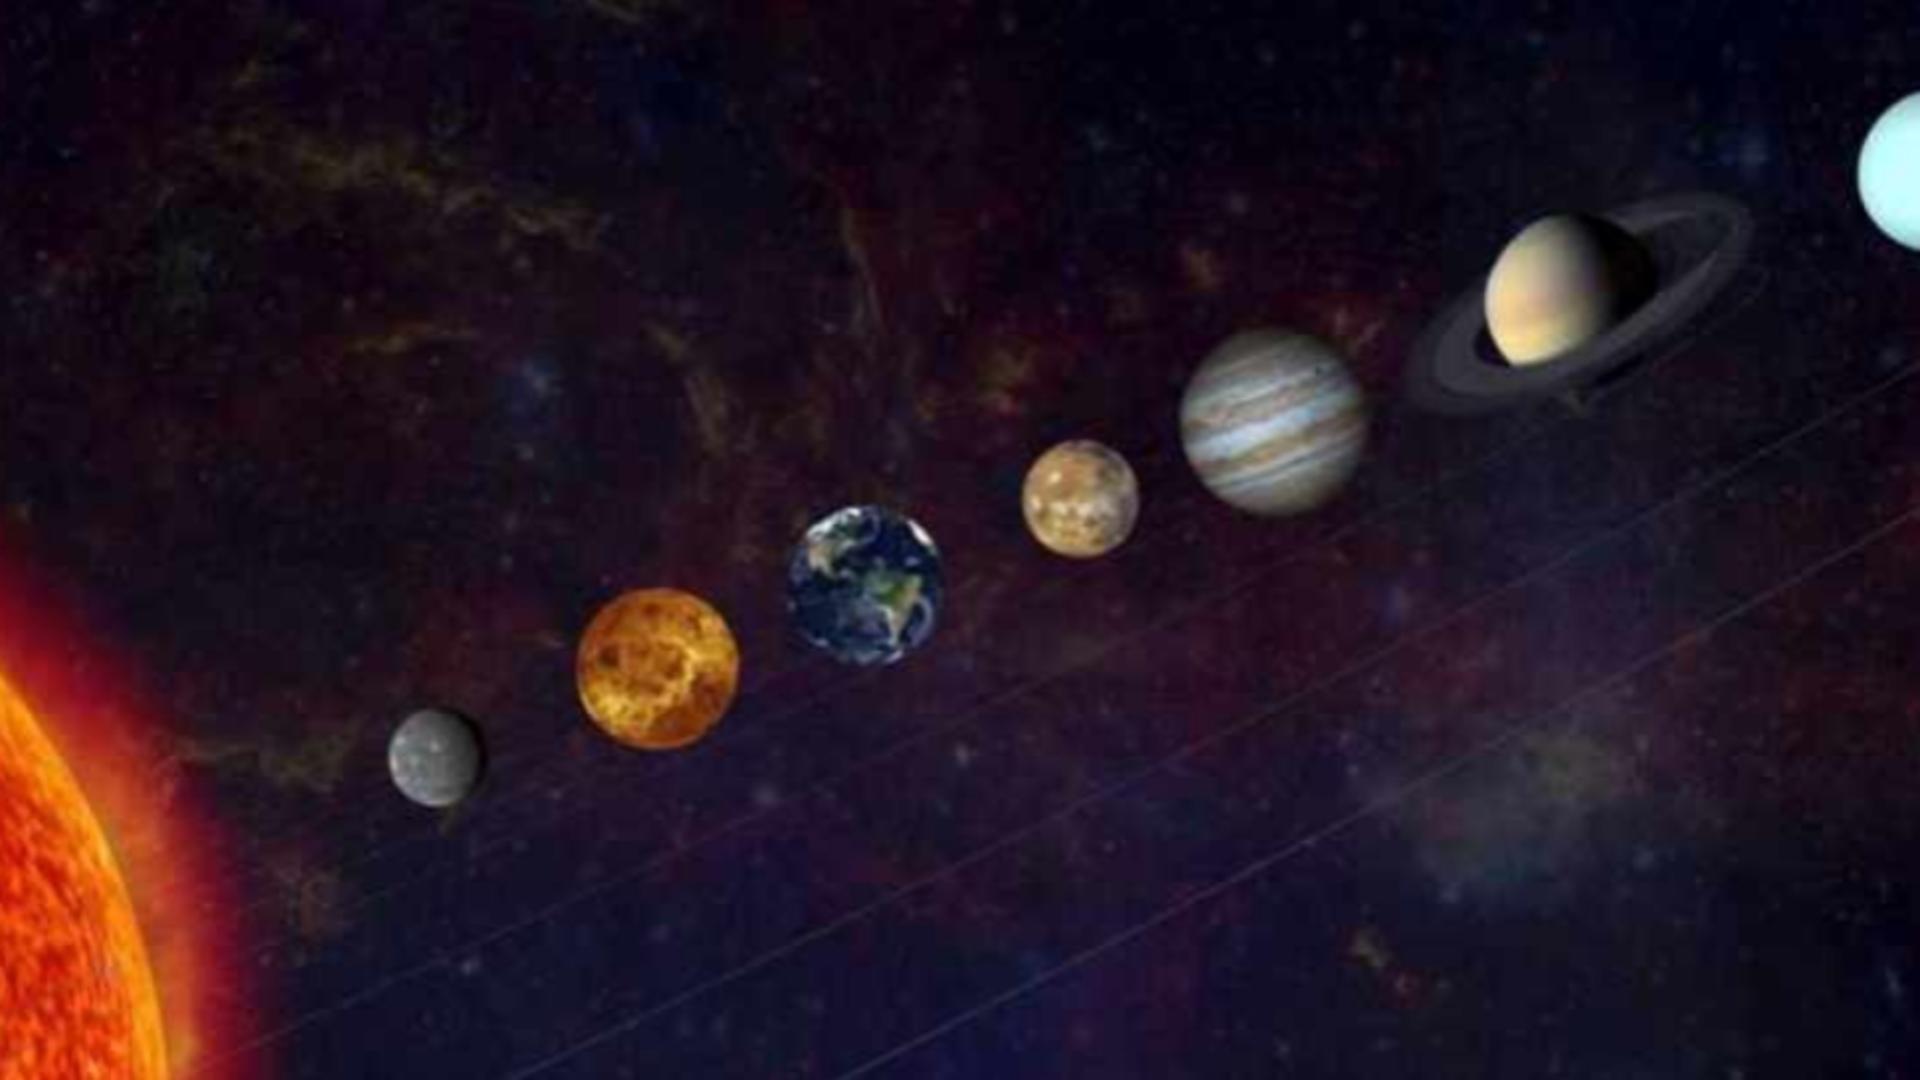 Fenomen astronomic rar în această noapte. Șase planete se vor alinia. Când se vede cel mai bine evenimentul astral?